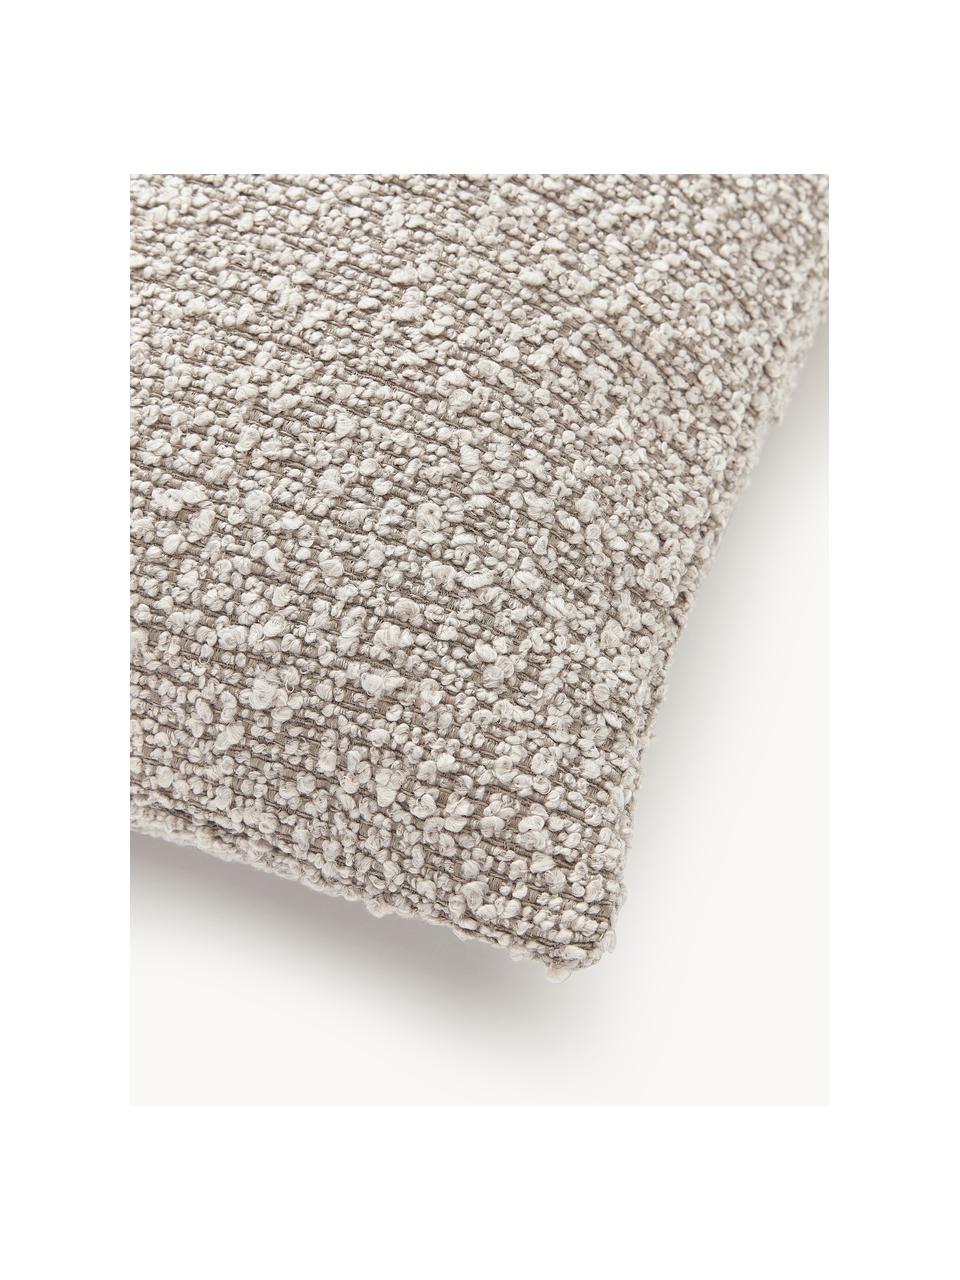 Housse de coussin en tissu bouclé Bellamie, Tissu bouclé (95 % polyester, 5 % polyacrylique)

Le bouclé est un matériau qui se caractérise par sa structure incurvée irrégulière. La surface caractéristique est créée par des boucles tissées de fils de différents types, qui confèrent au tissu une structure unique. La structure bouclée a un effet à la fois isolant et moelleux, ce qui rend le tissu particulièrement douillet, Bouclé grège, larg. 60 x long. 60 cm